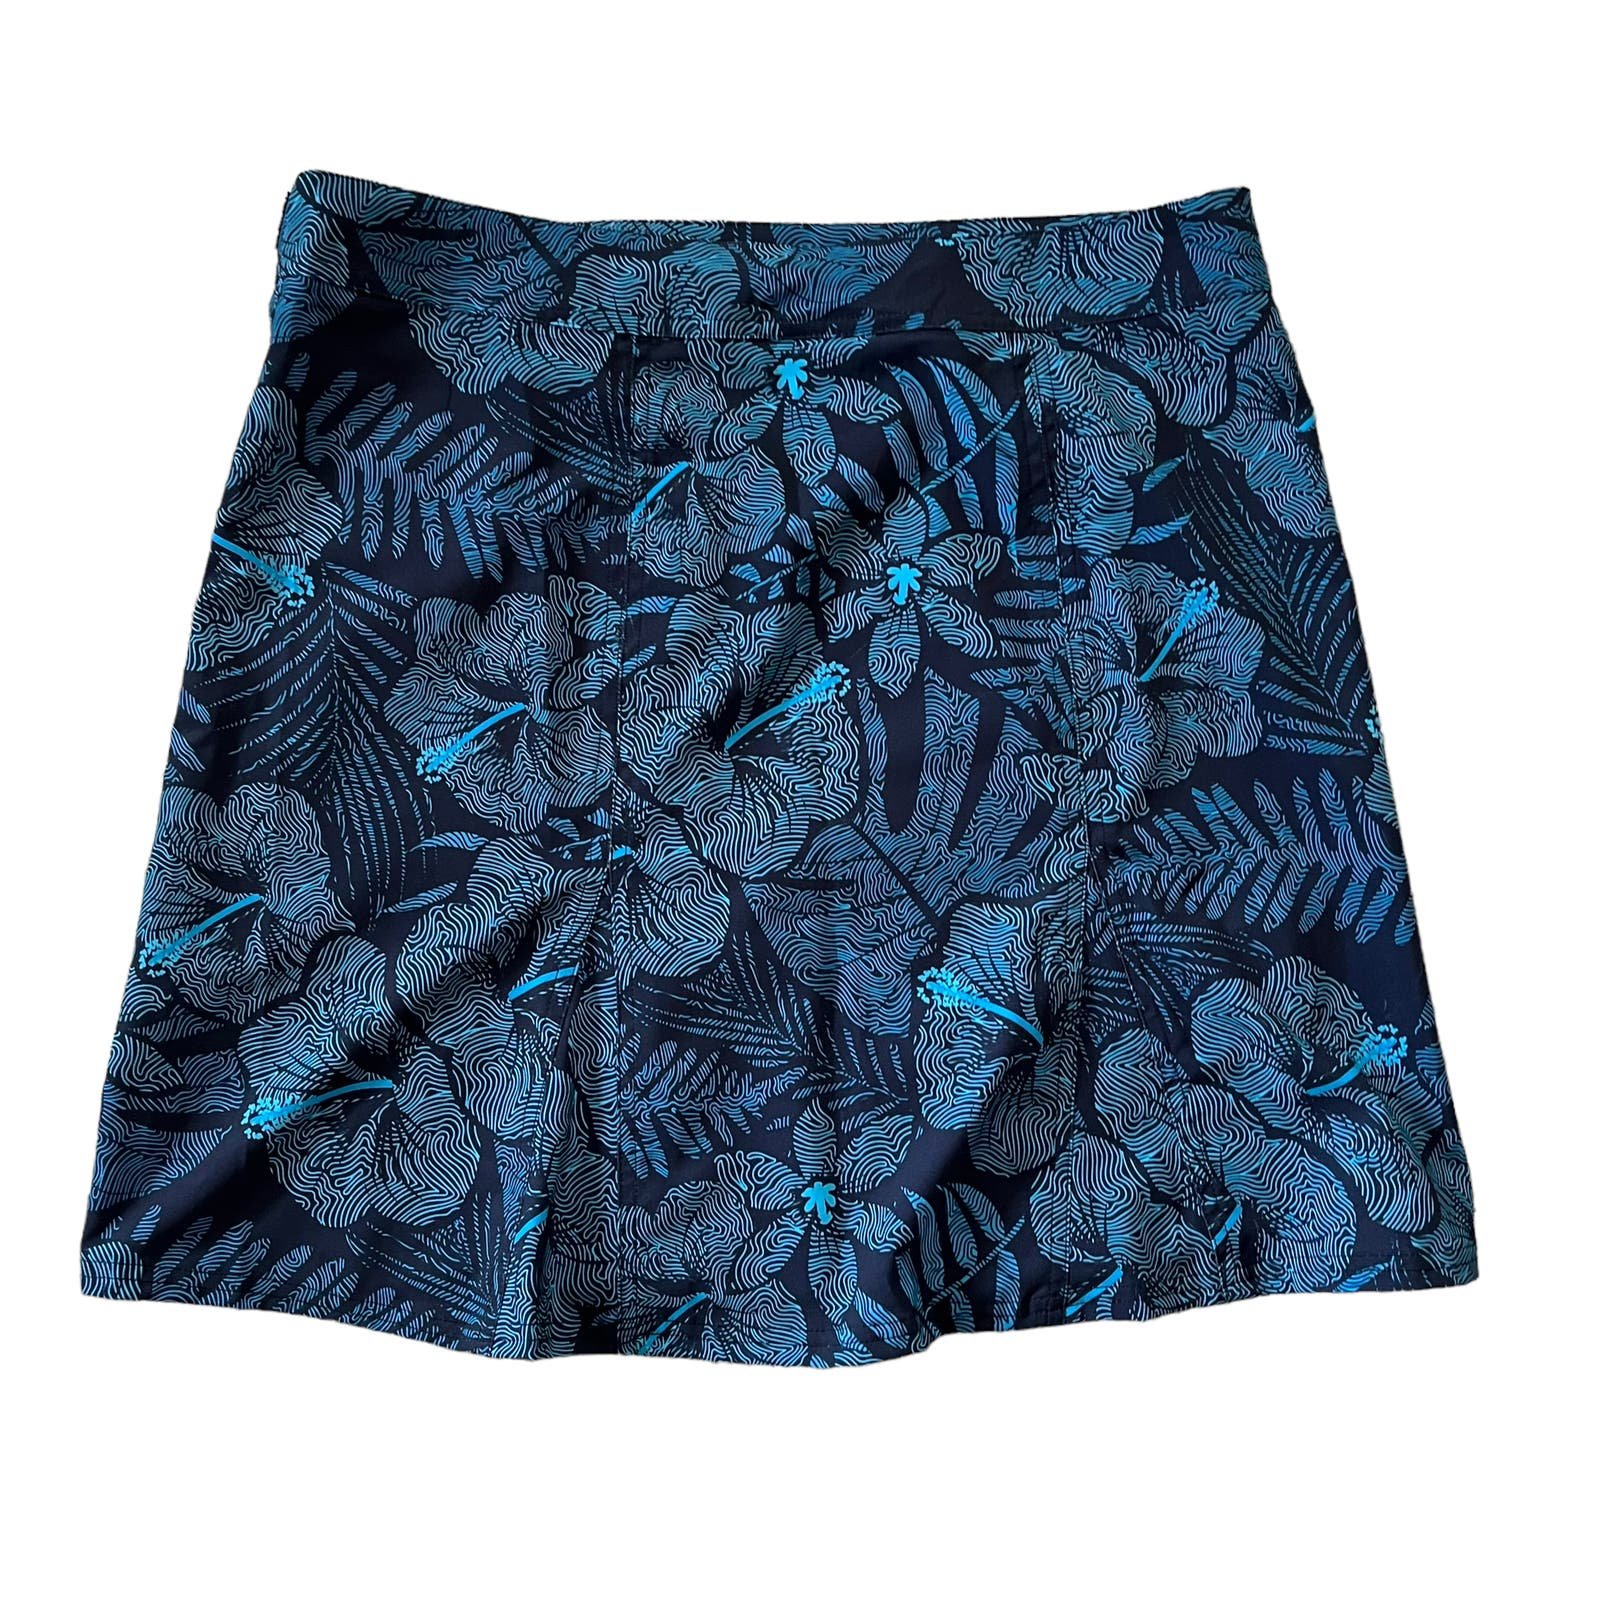 The Best Seller Rip Skirt Hawaii Blue Floral Wrap Skirt